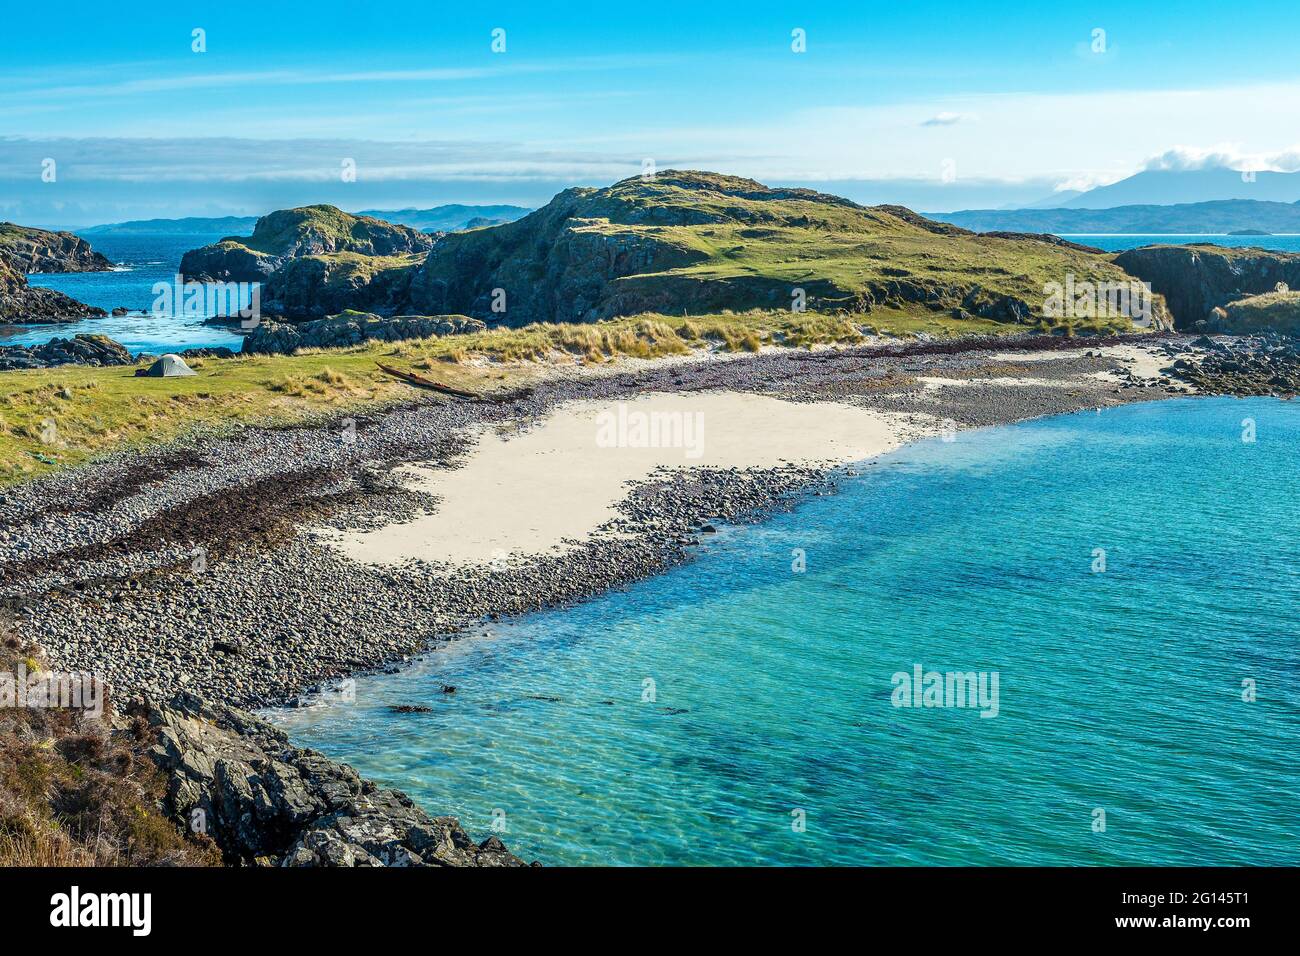 Ein Wildcamp für Seekajaker auf Oldany Island im Nordwesten Schottlands Stockfoto